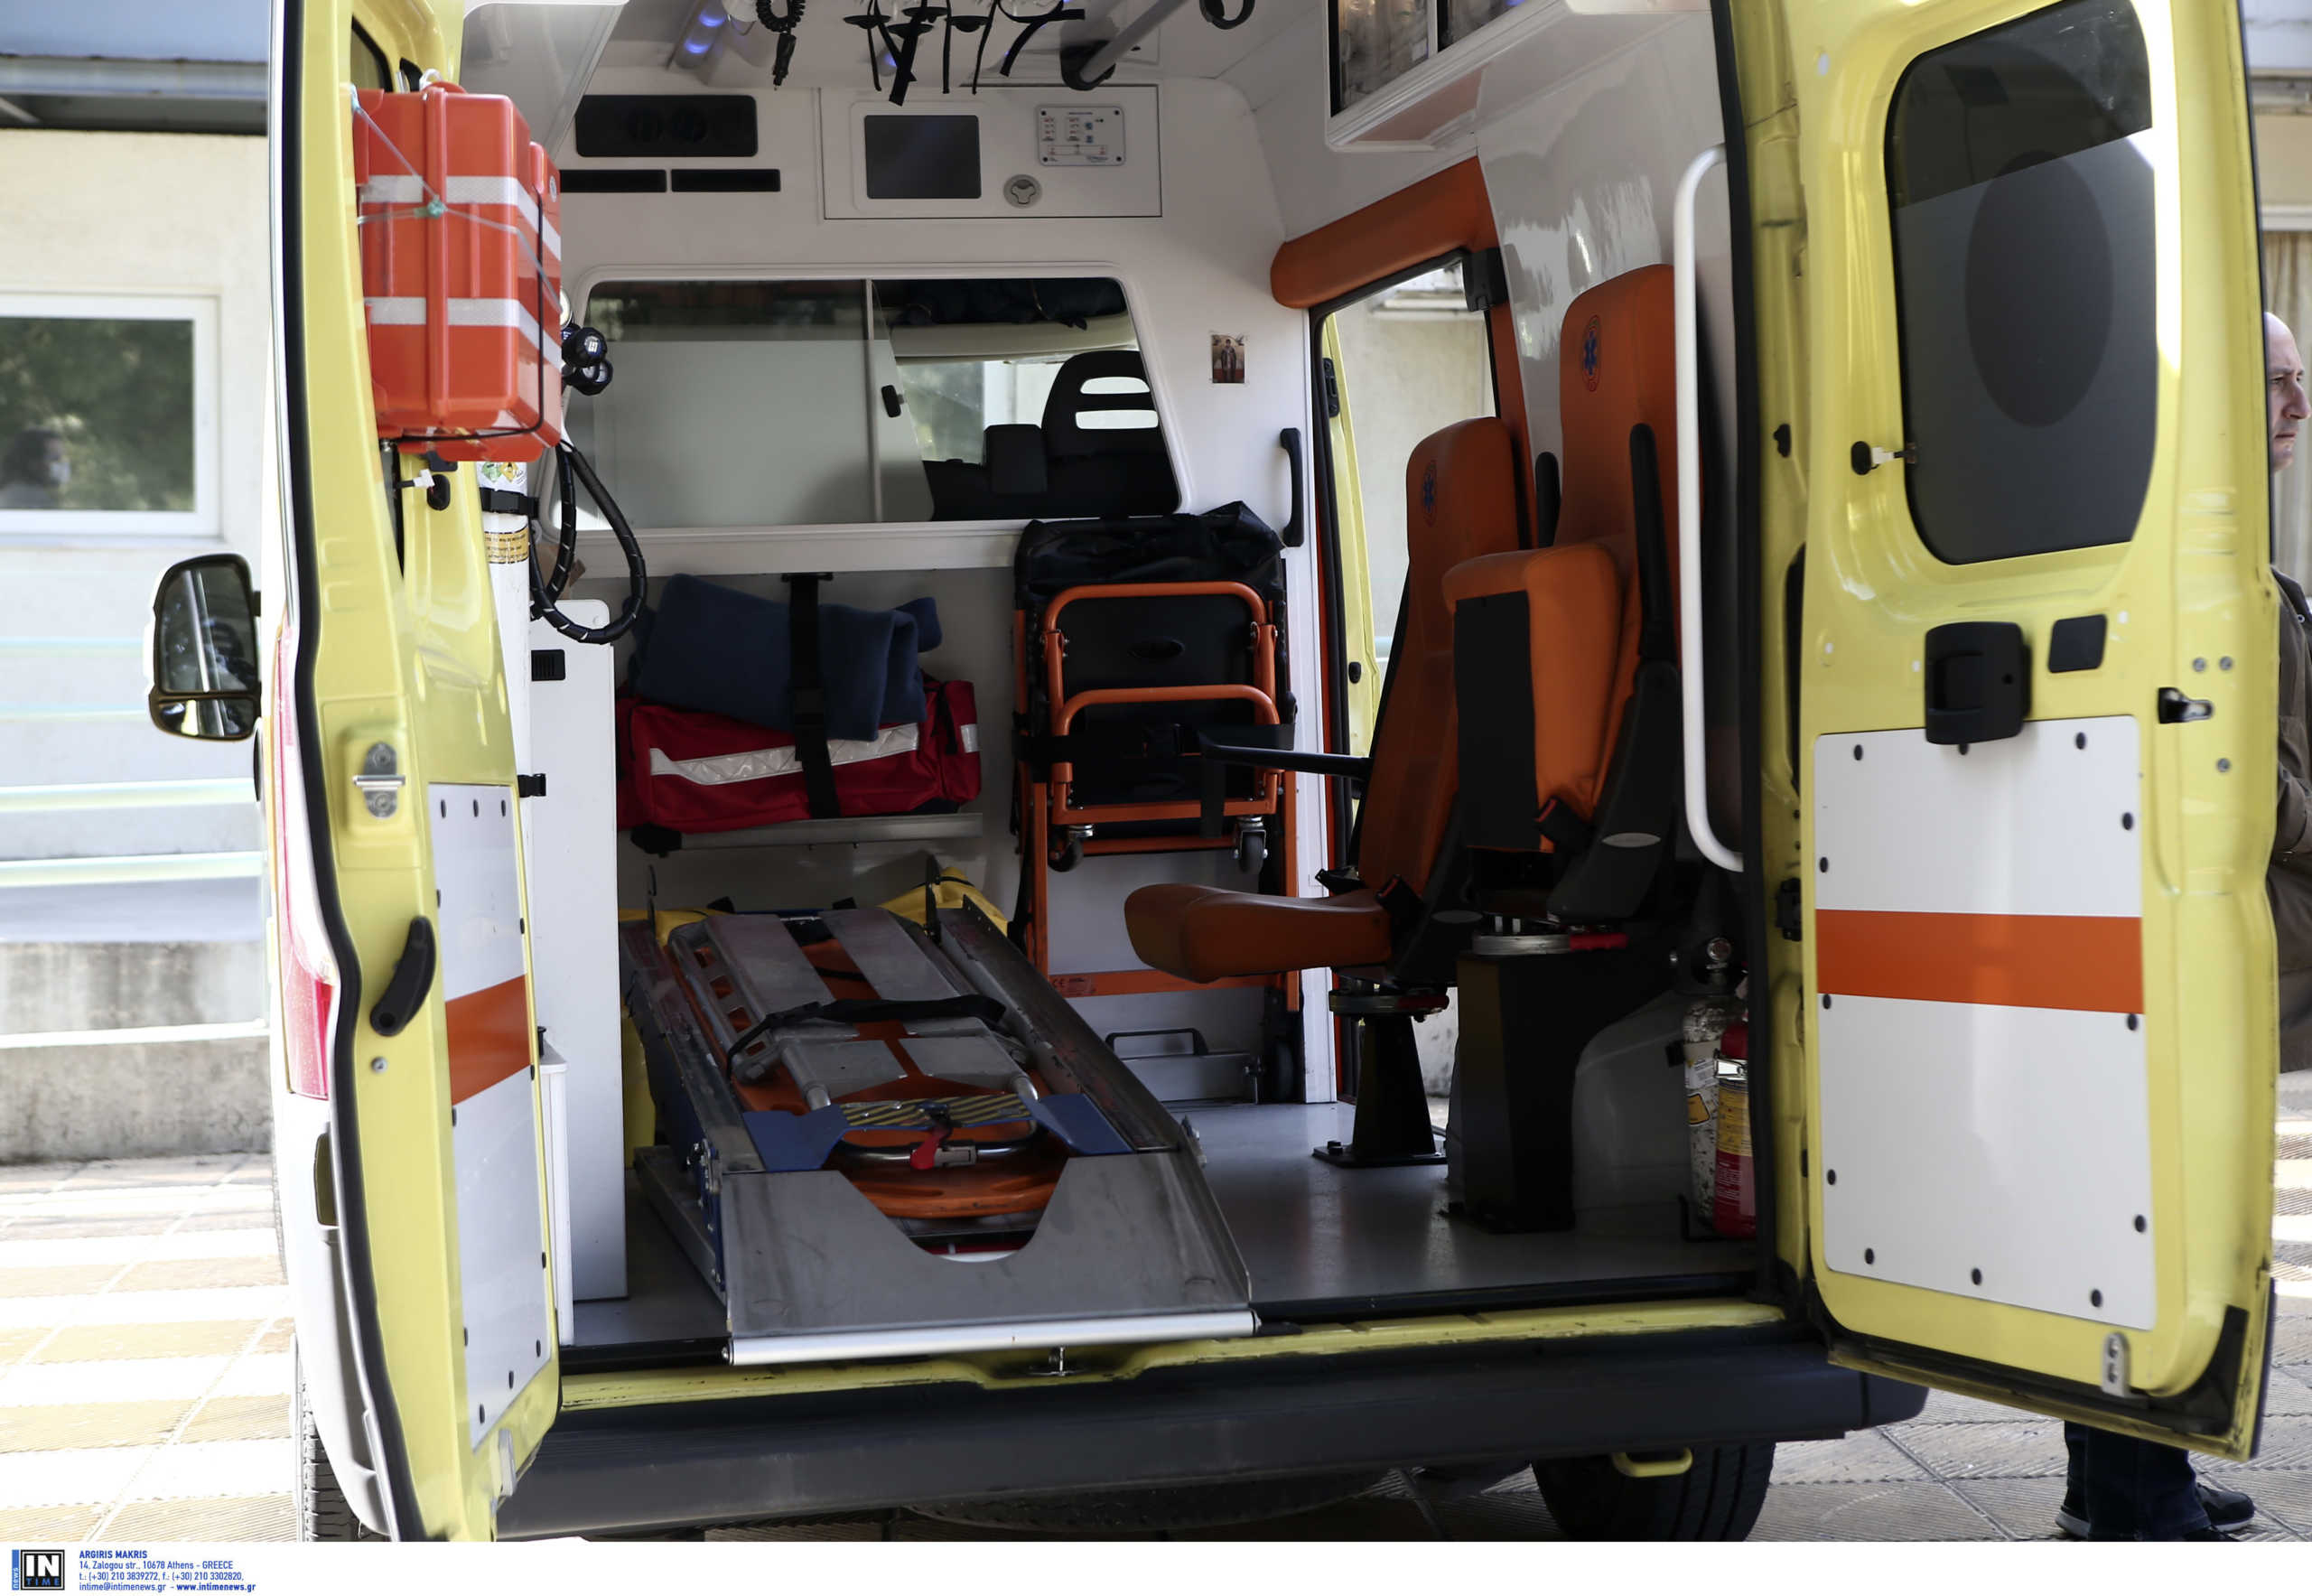 Σέρρες: Ένας νεκρός και τρεις τραυματίες σε σύγκρουση αυτοκινήτου με λεωφορείο της αστυνομίας